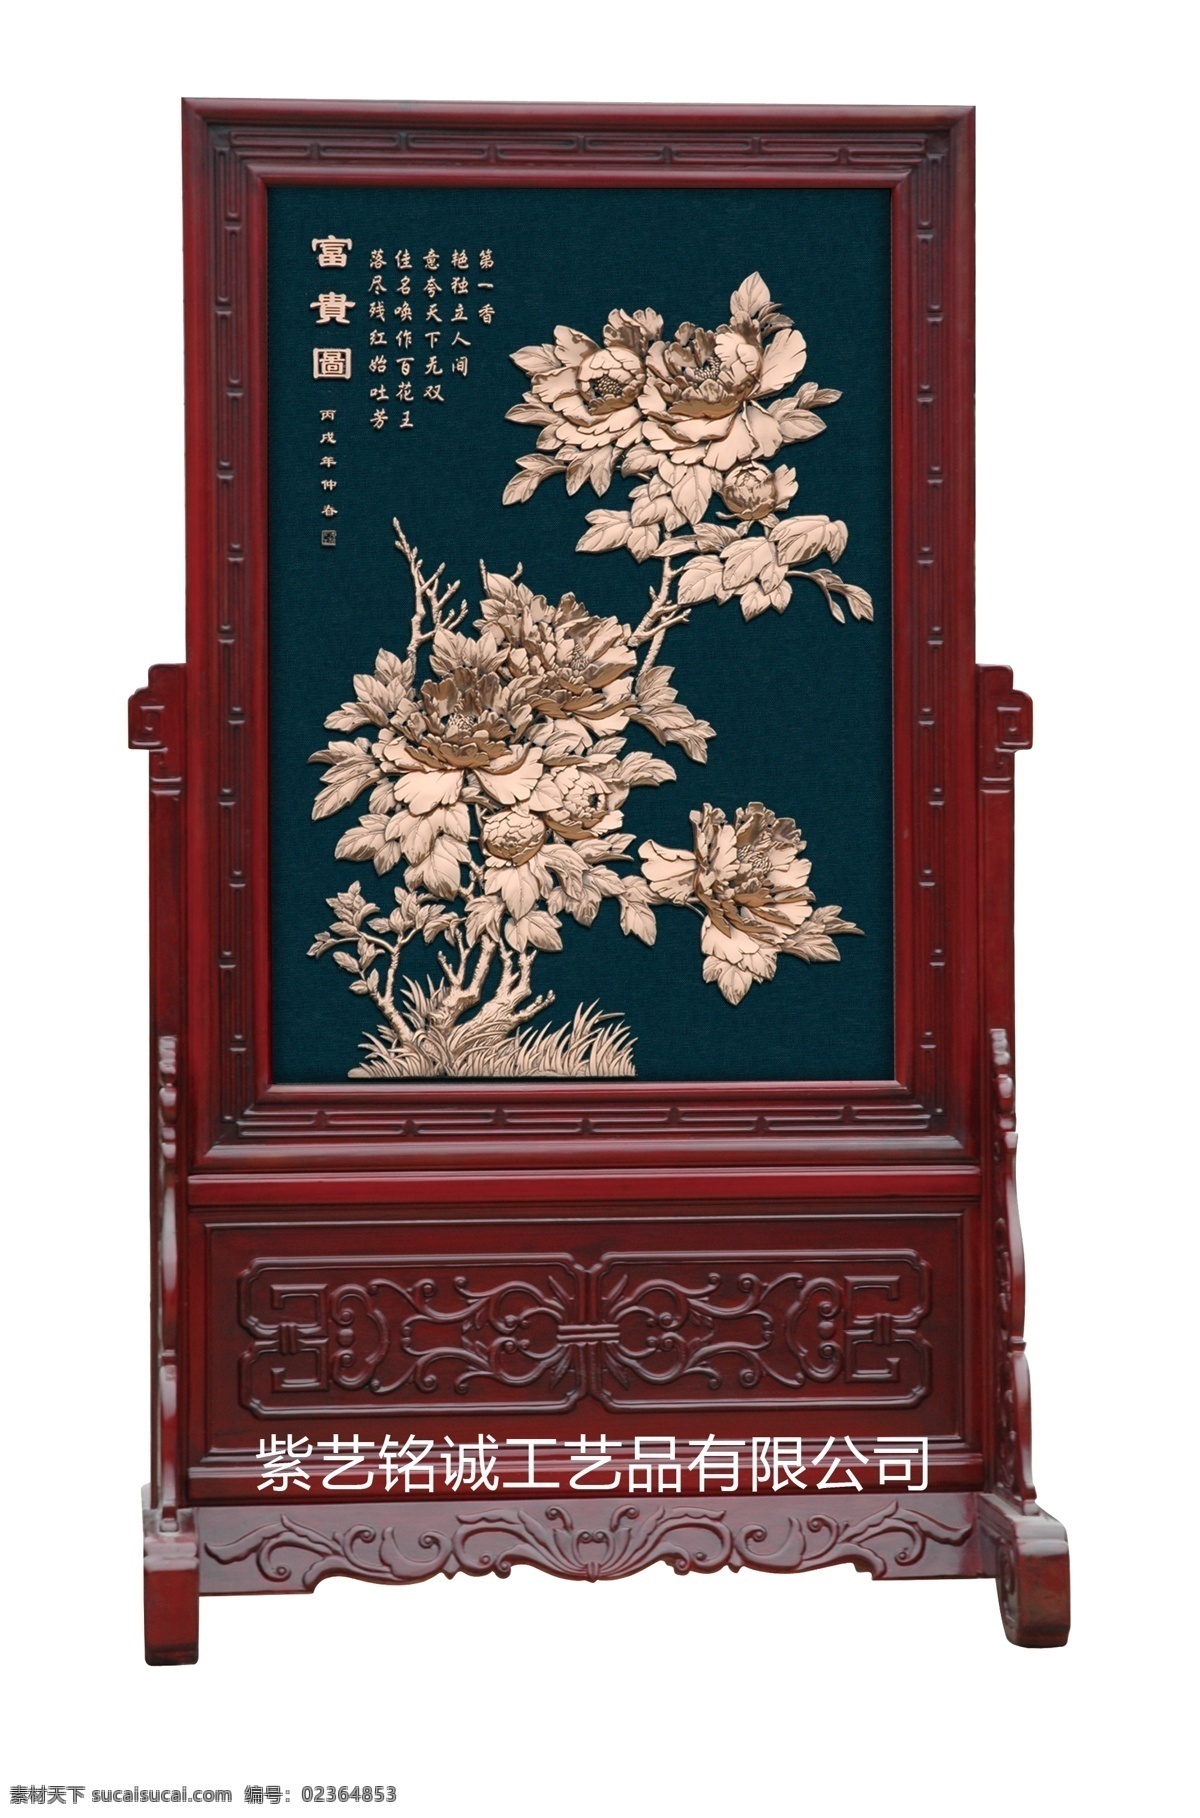 紫铜浮雕屏风 屏风 紫铜浮雕 镜屏 富贵图 中国古典 传统 红色 红木 分层 源文件